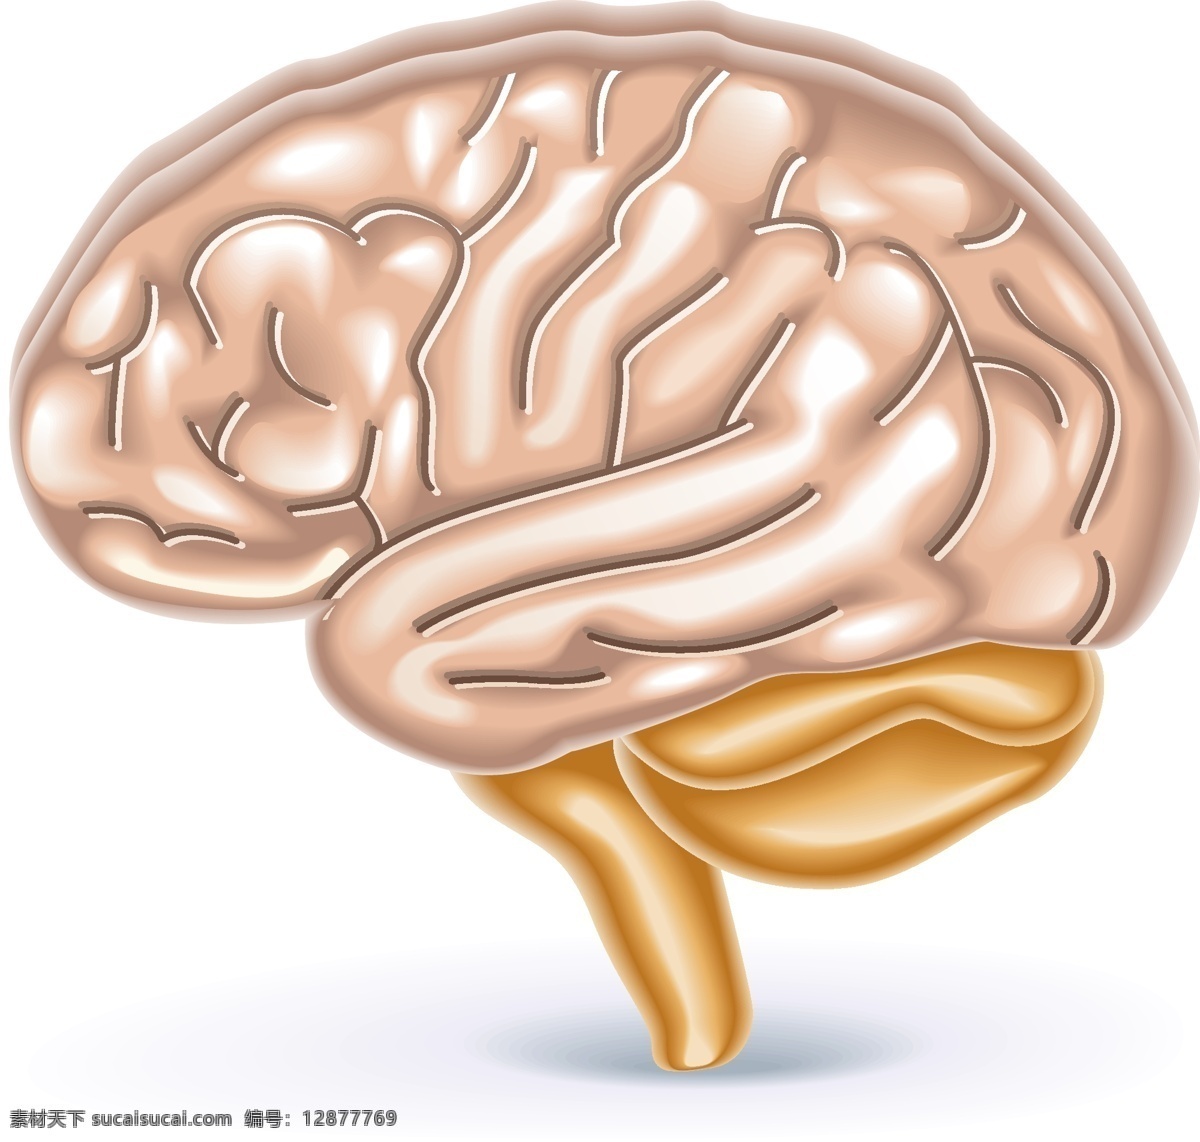 矢量 卡通 大脑 元素 手绘 人体器官 思考 ai元素 免扣元素